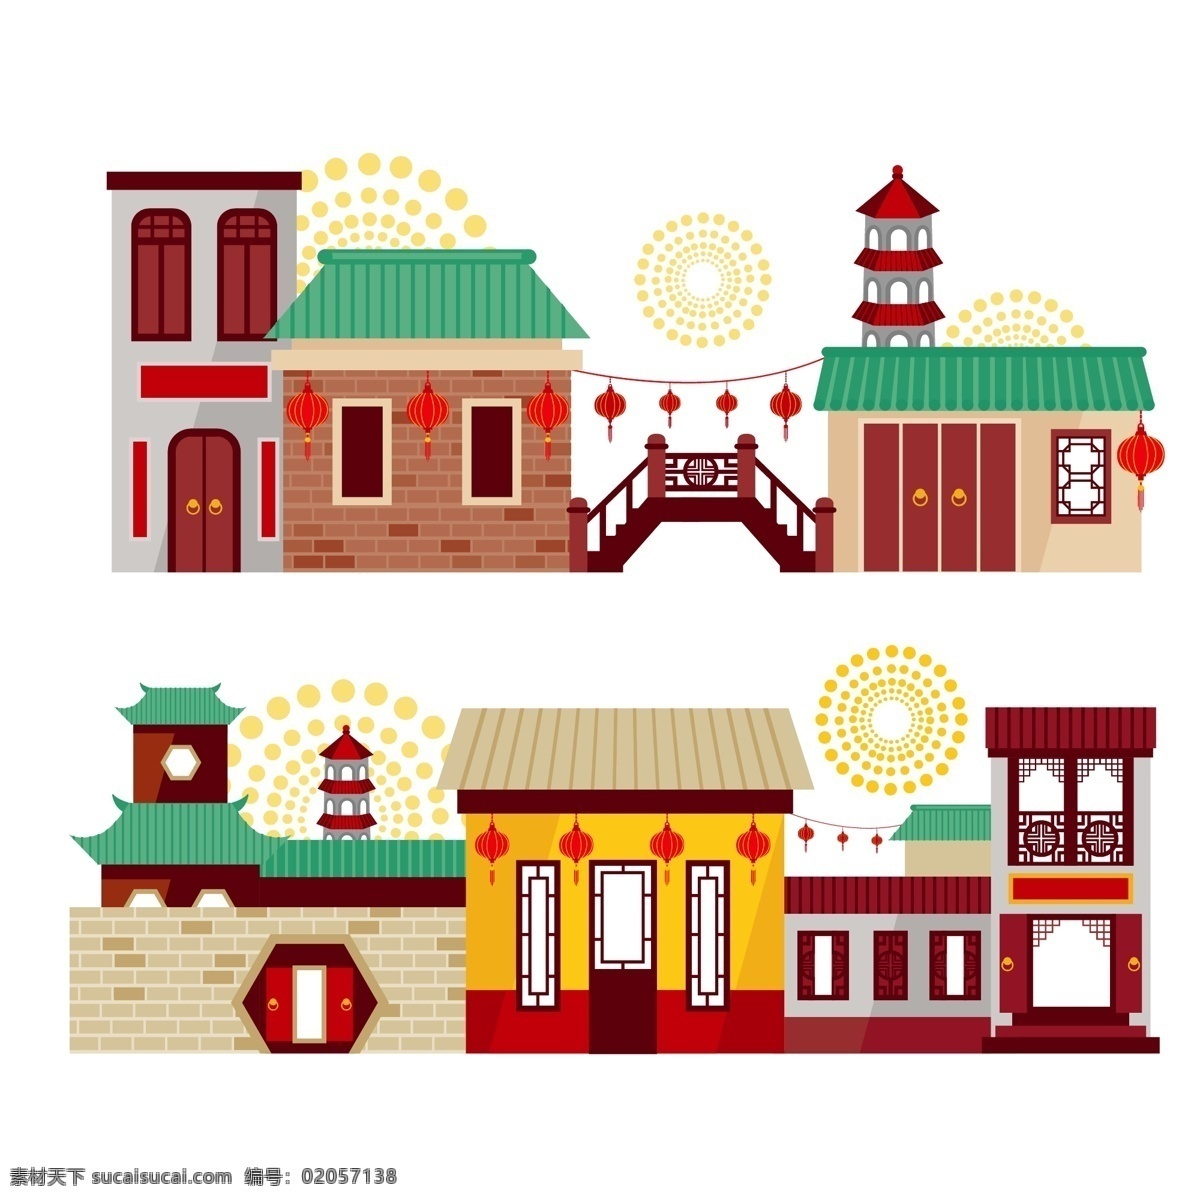 中国 中式 传统 建筑 插画 房子 仿古 塔 小桥